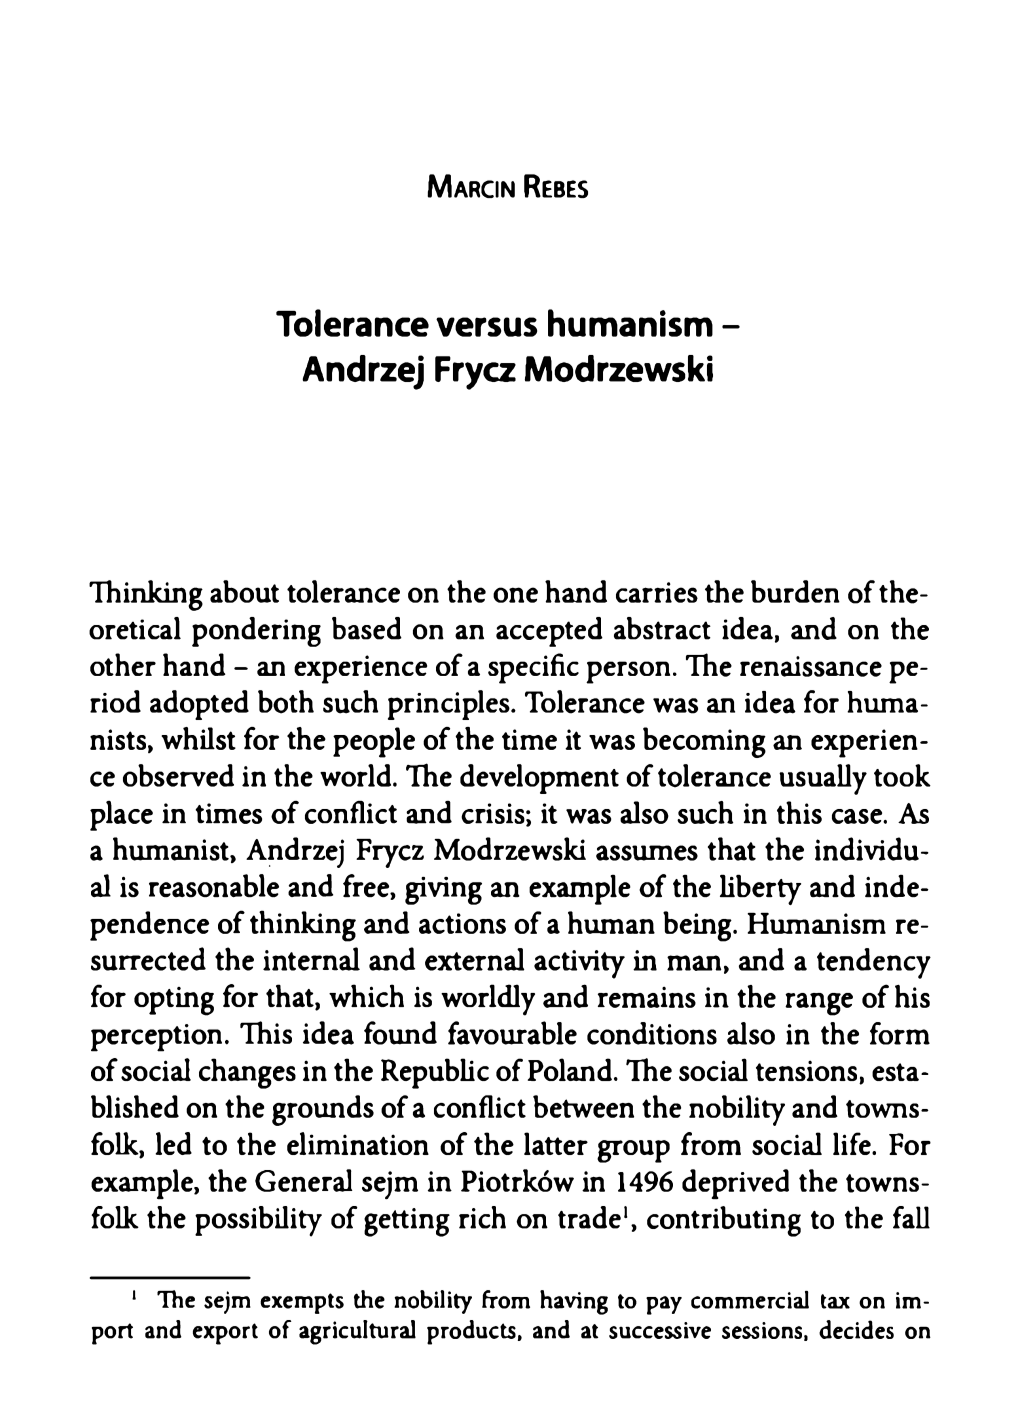 Tolerance Versus Humanism - Andrzej Frycz Modrzewski